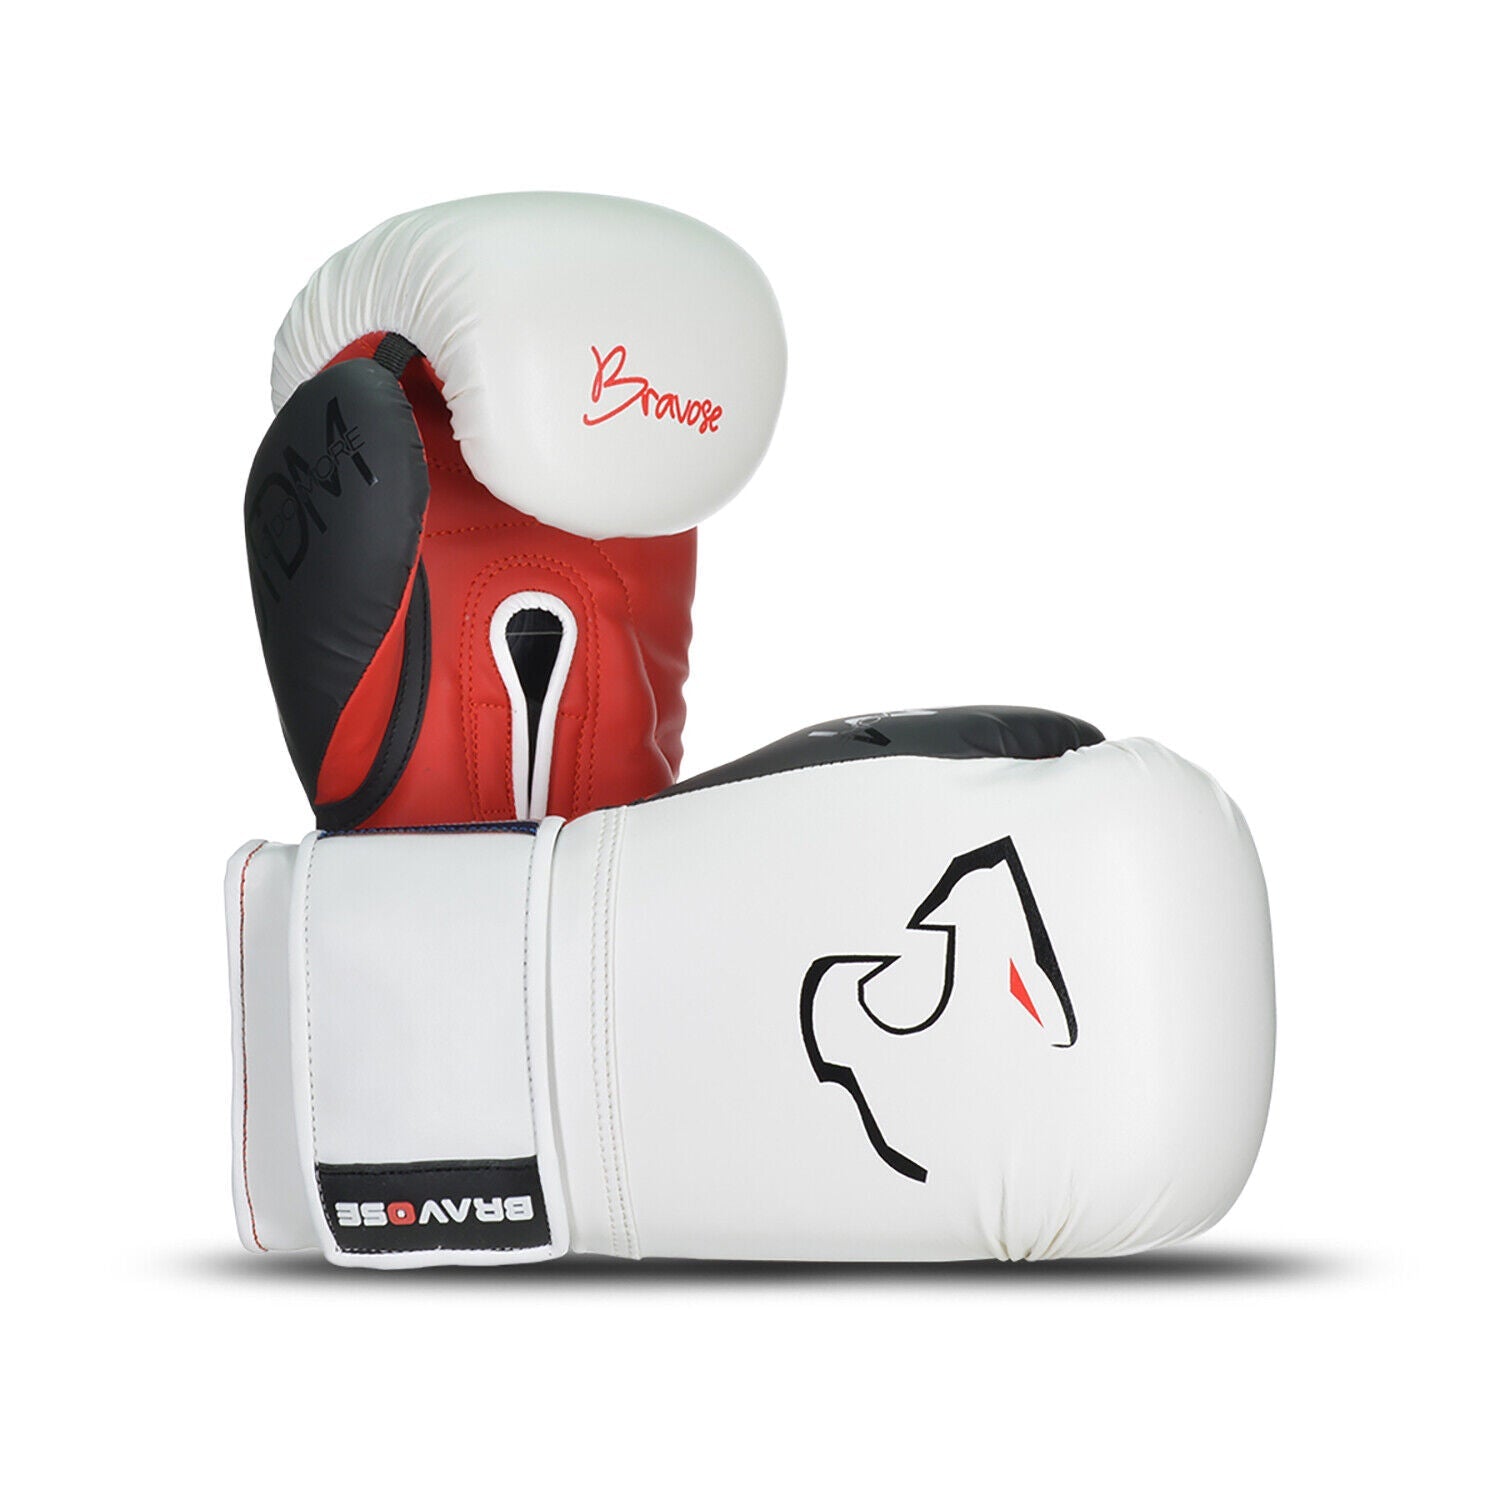 Bravose Mens Nemesis Boxing Gloves White & Red Sparring